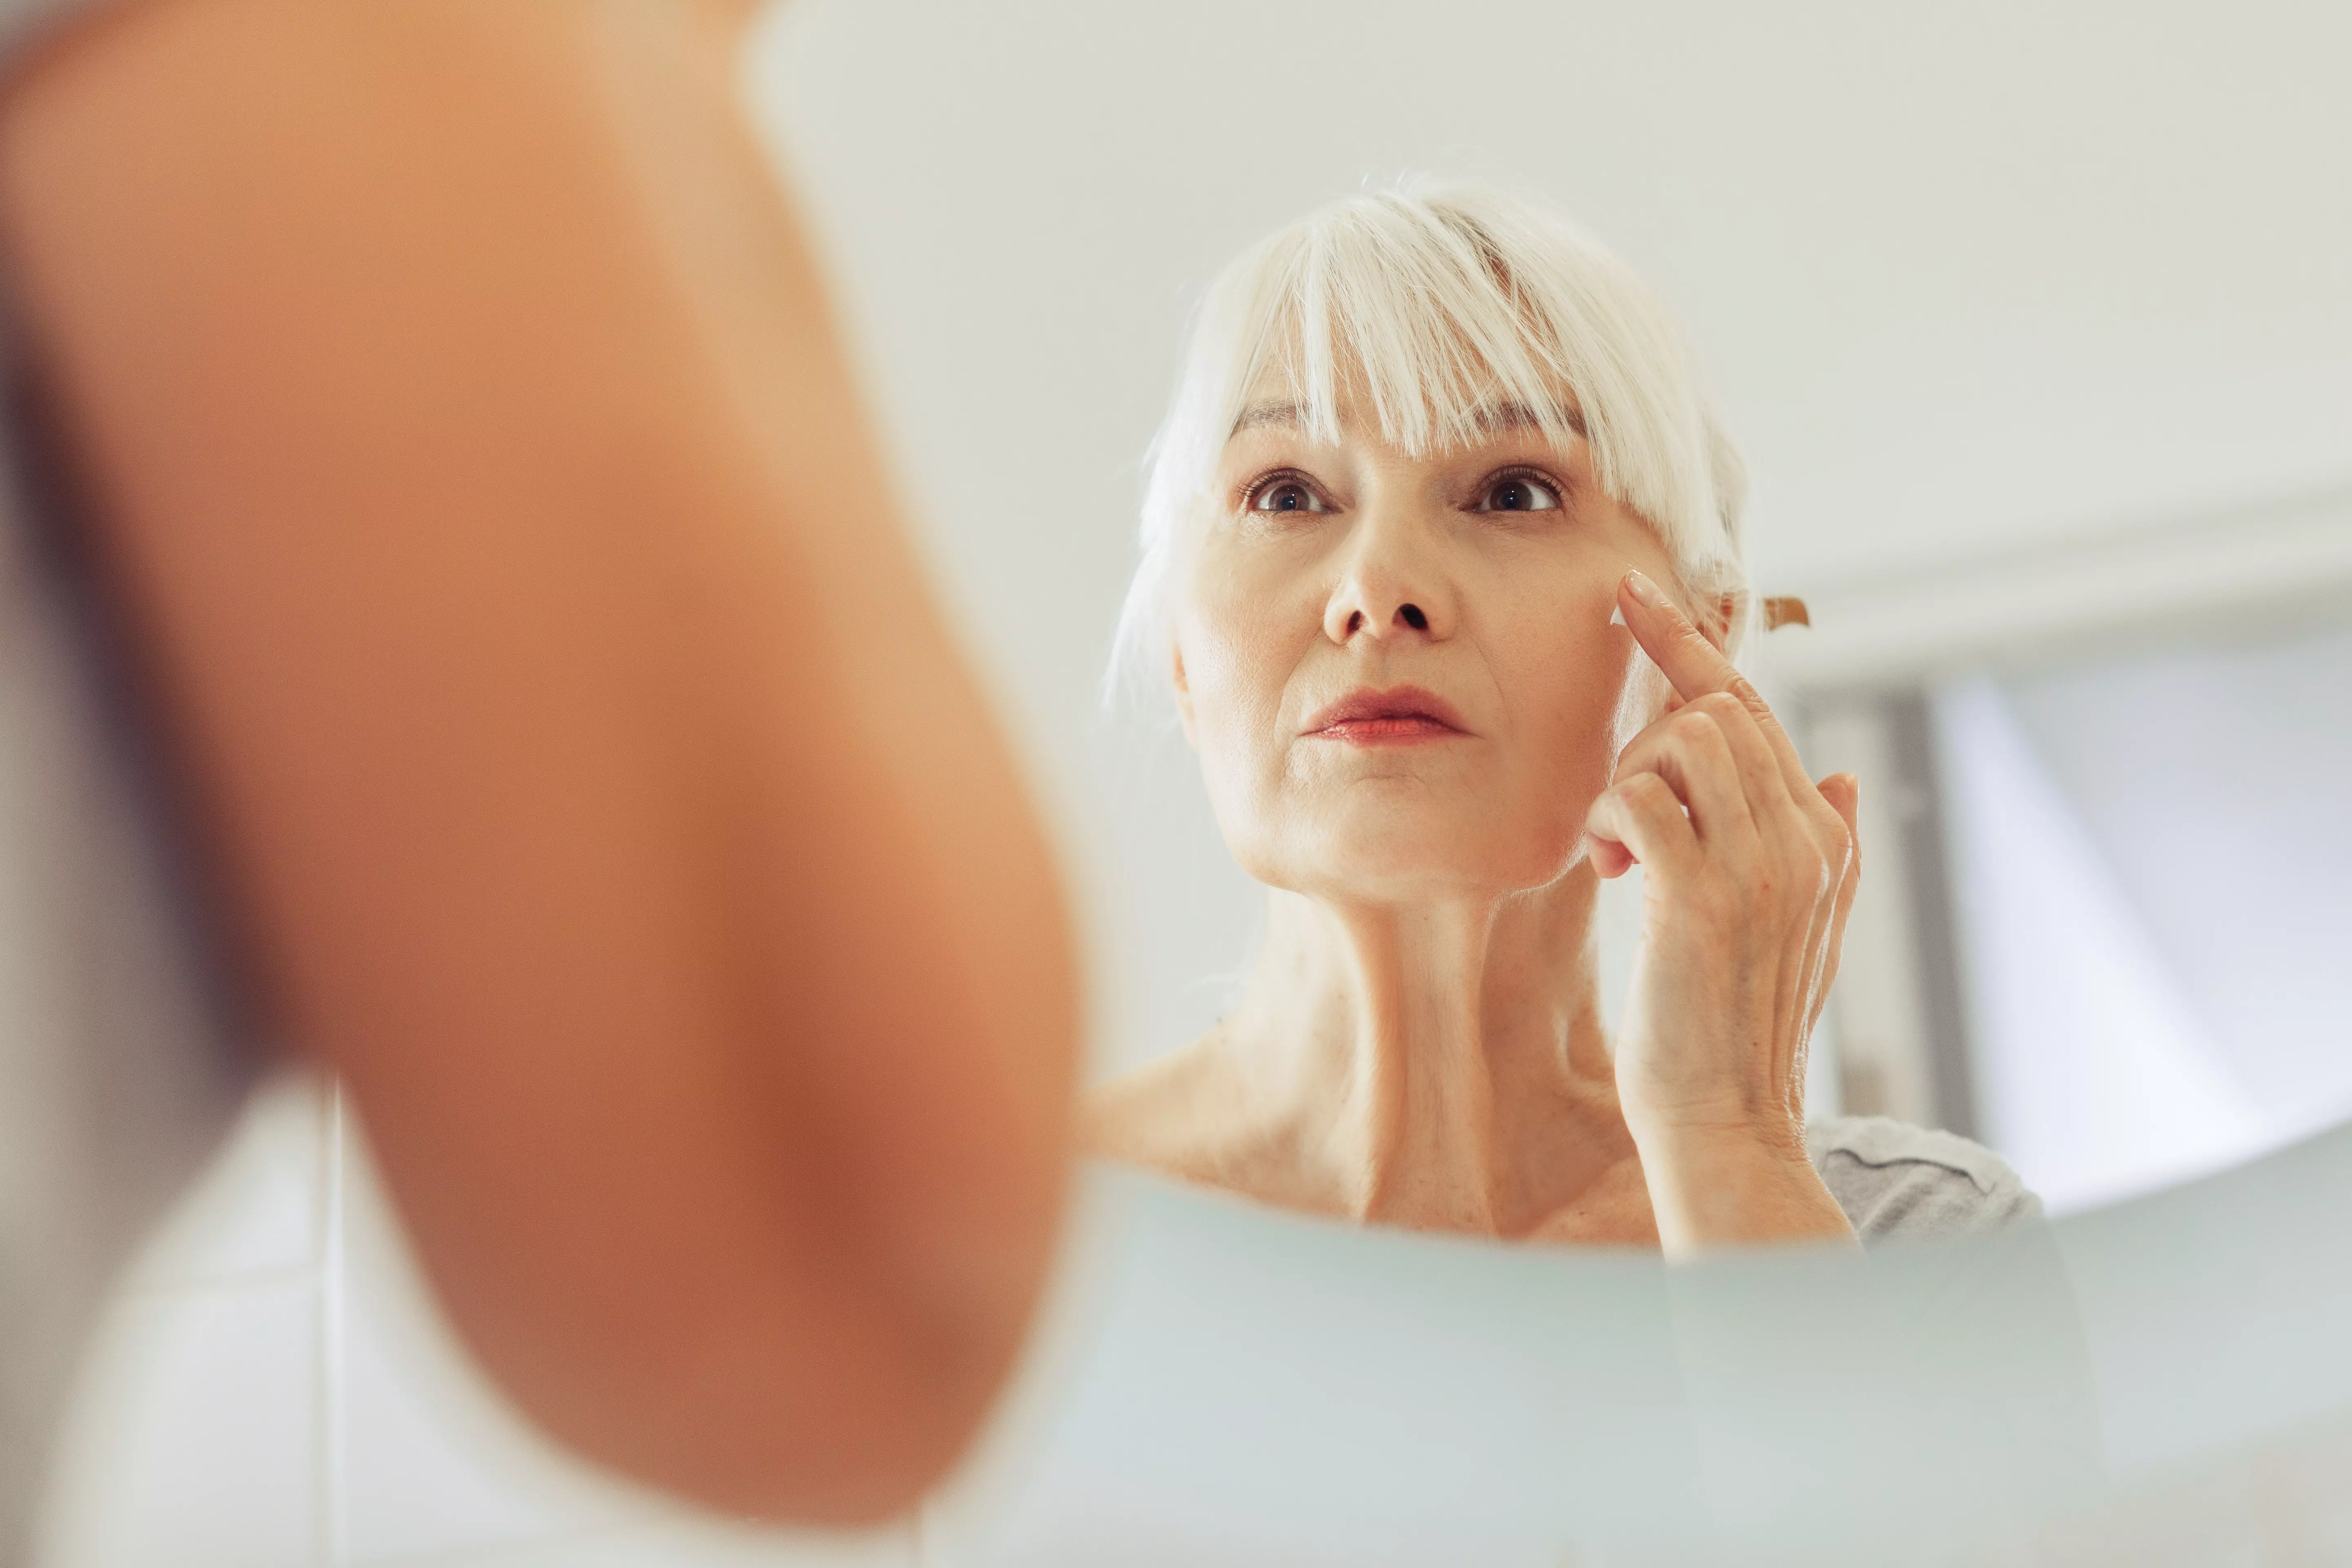 Menopausal woman skin in mirror